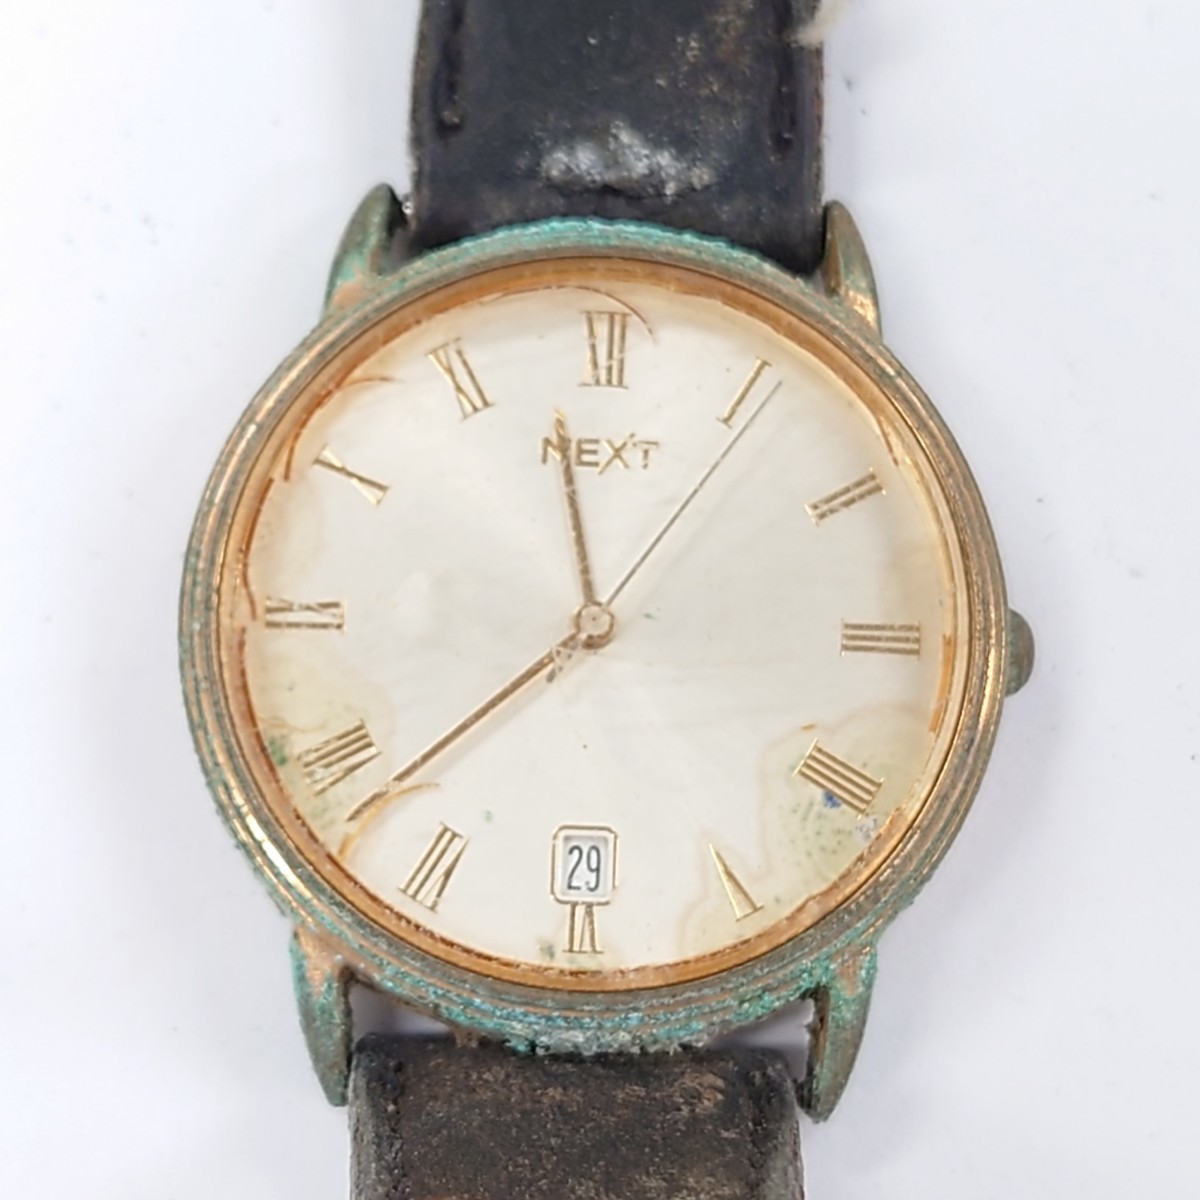 I331 腕時計 まとめ silvia&silvester J・AXIS NEXT ROSIVGA 中古 ジャンク品 訳あり_画像6